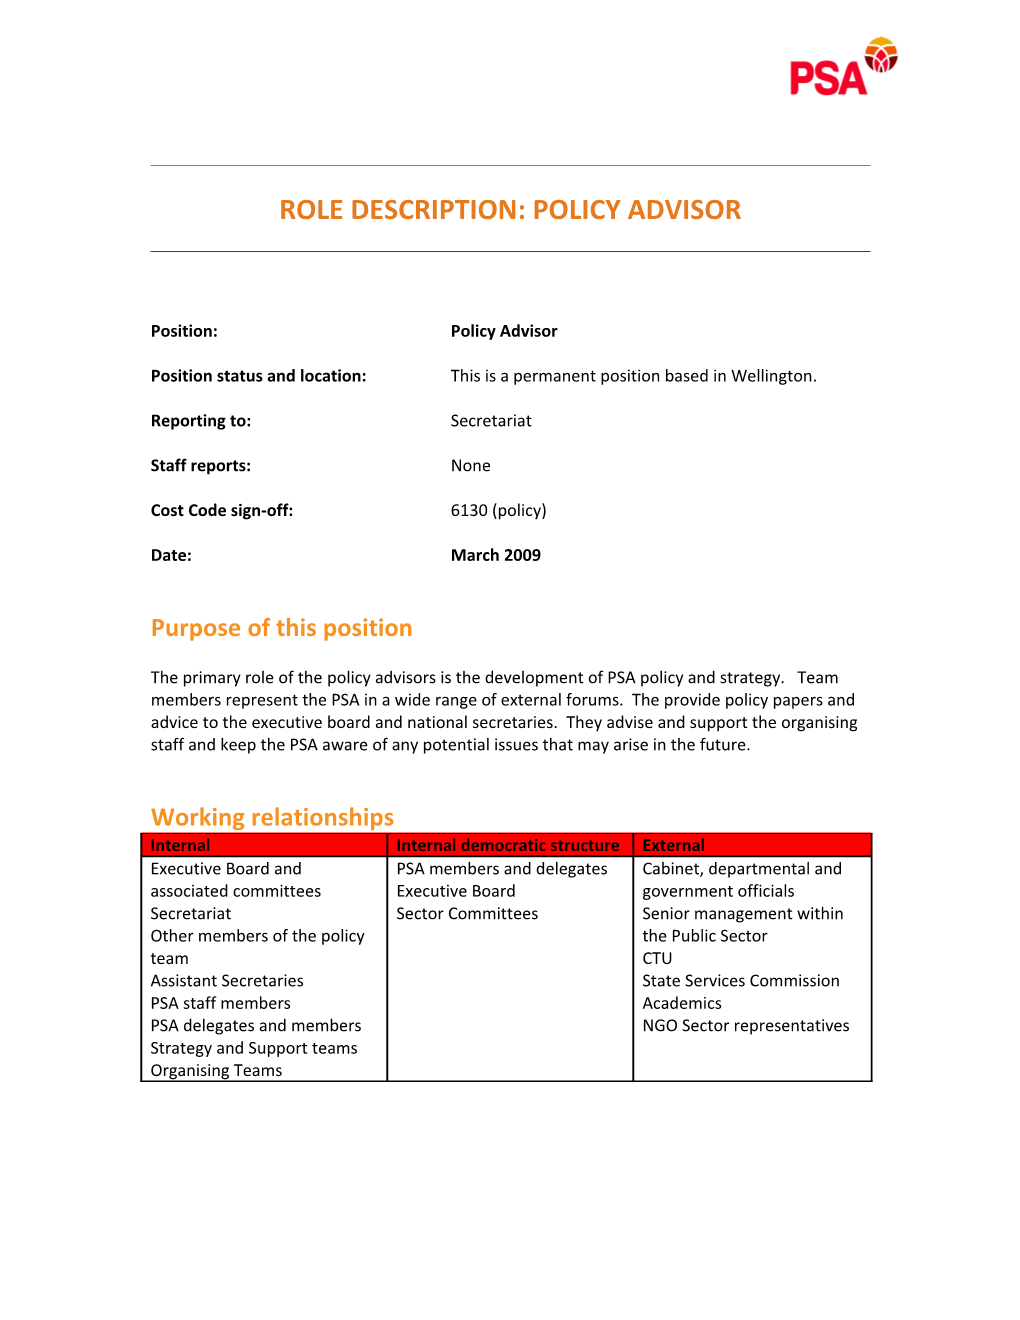 Role Description: Policy Advisor